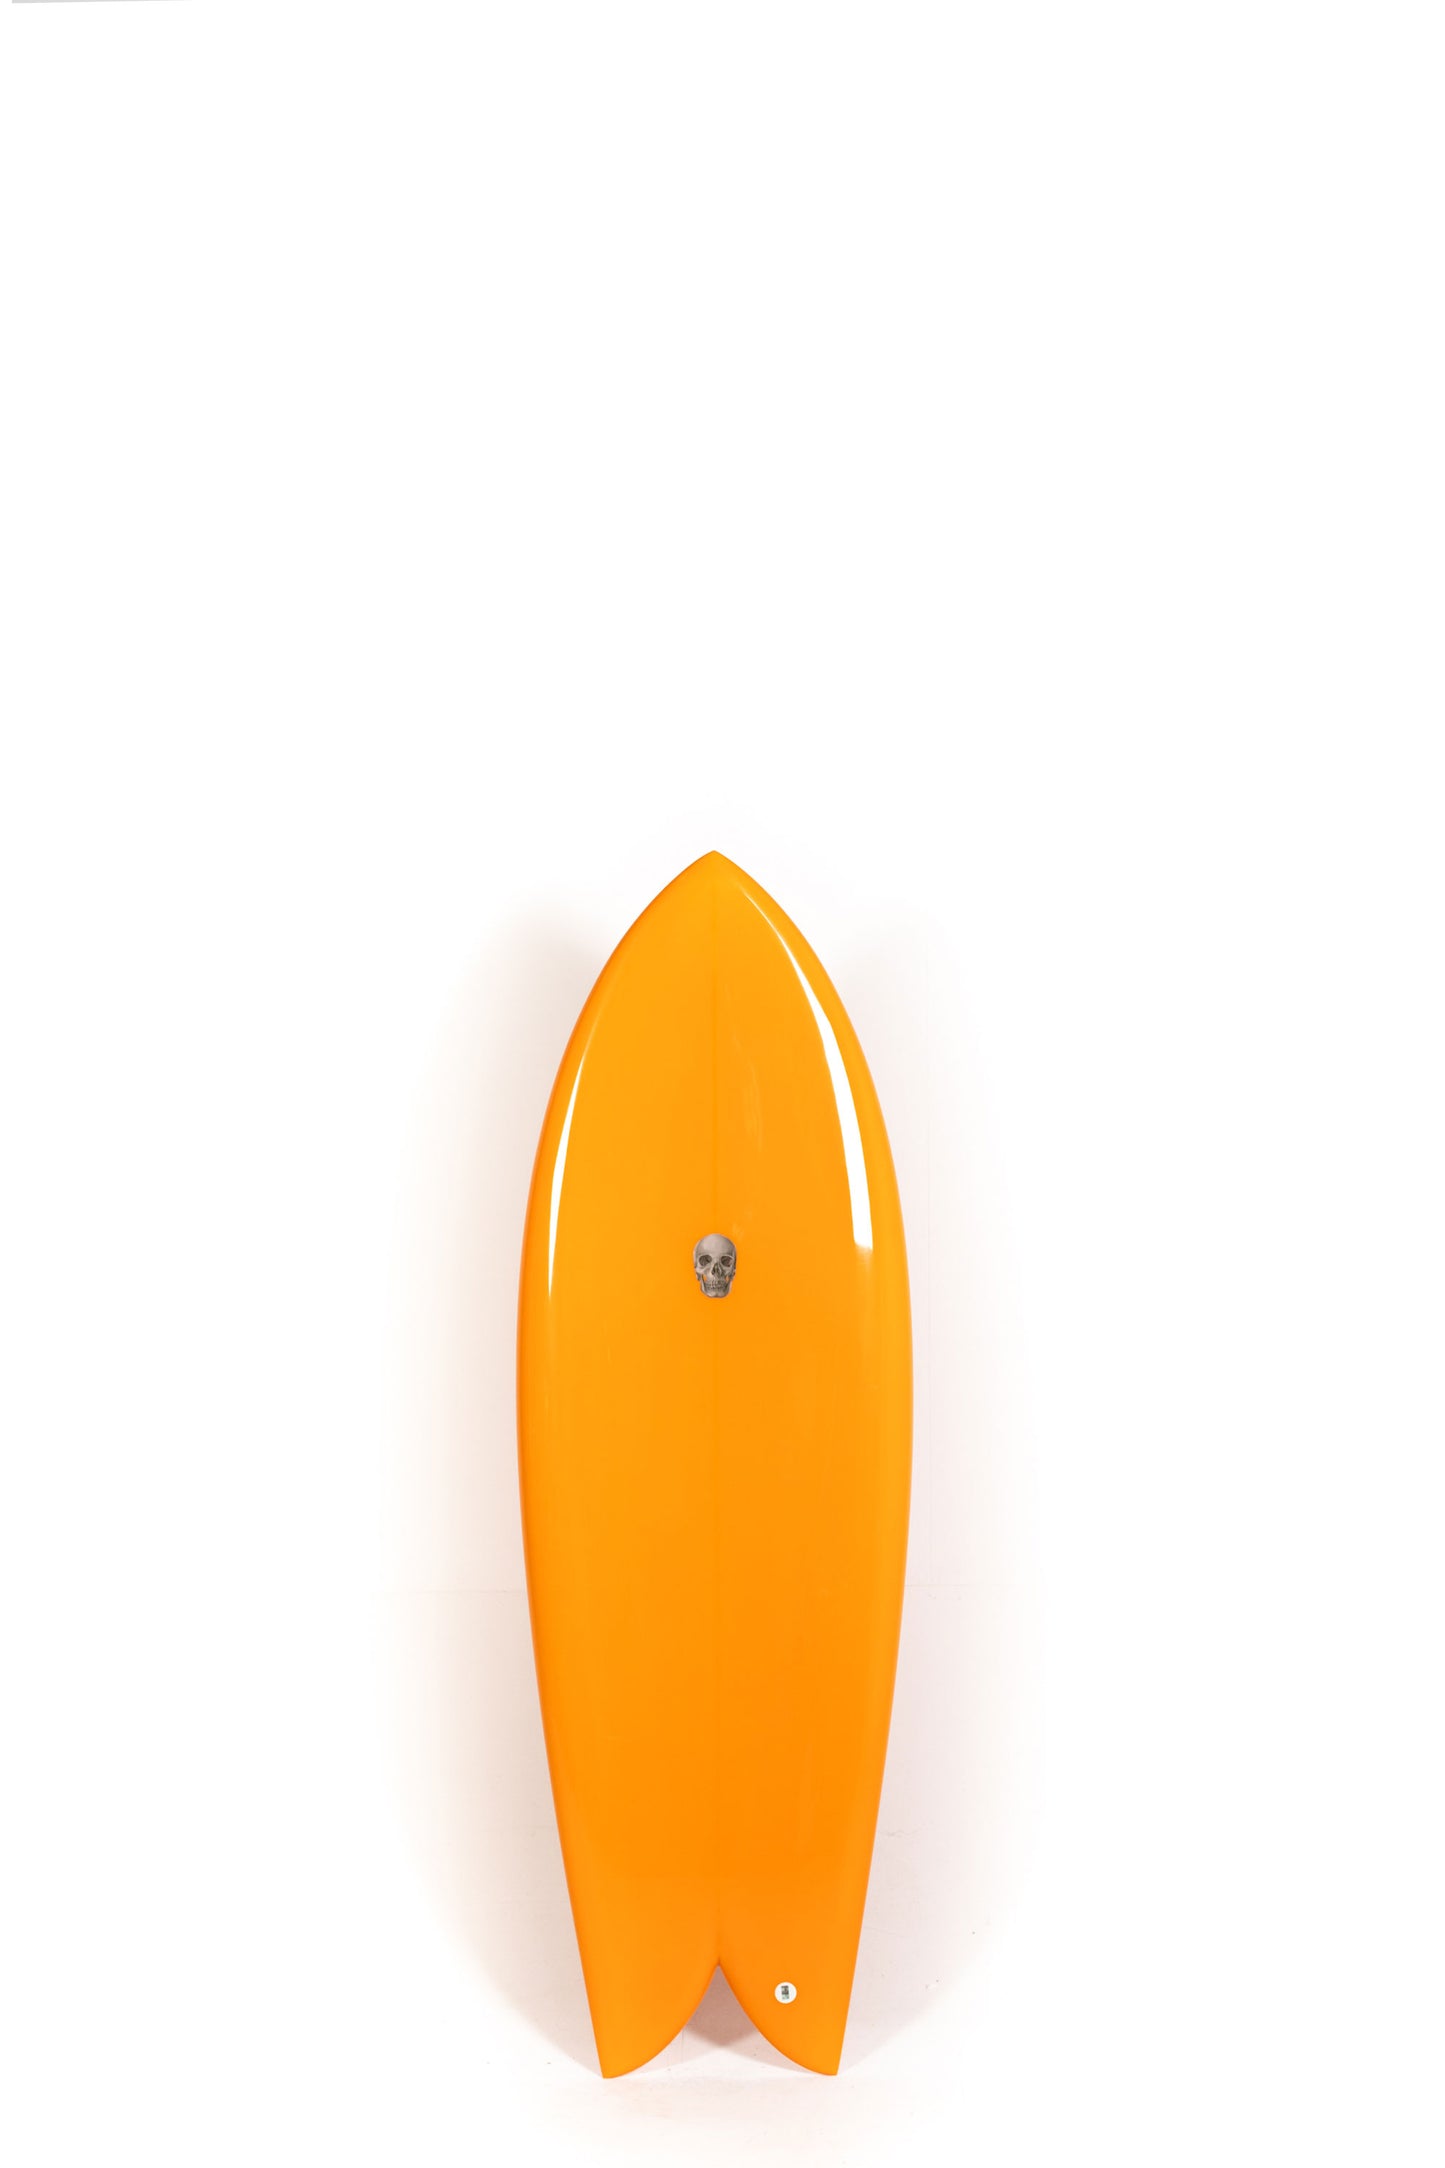 Pukas Surf Shop - Christenson Surfboards - CHRIS FISH - 5'4" x 20 3/4 x 2 3/8 -CX04729